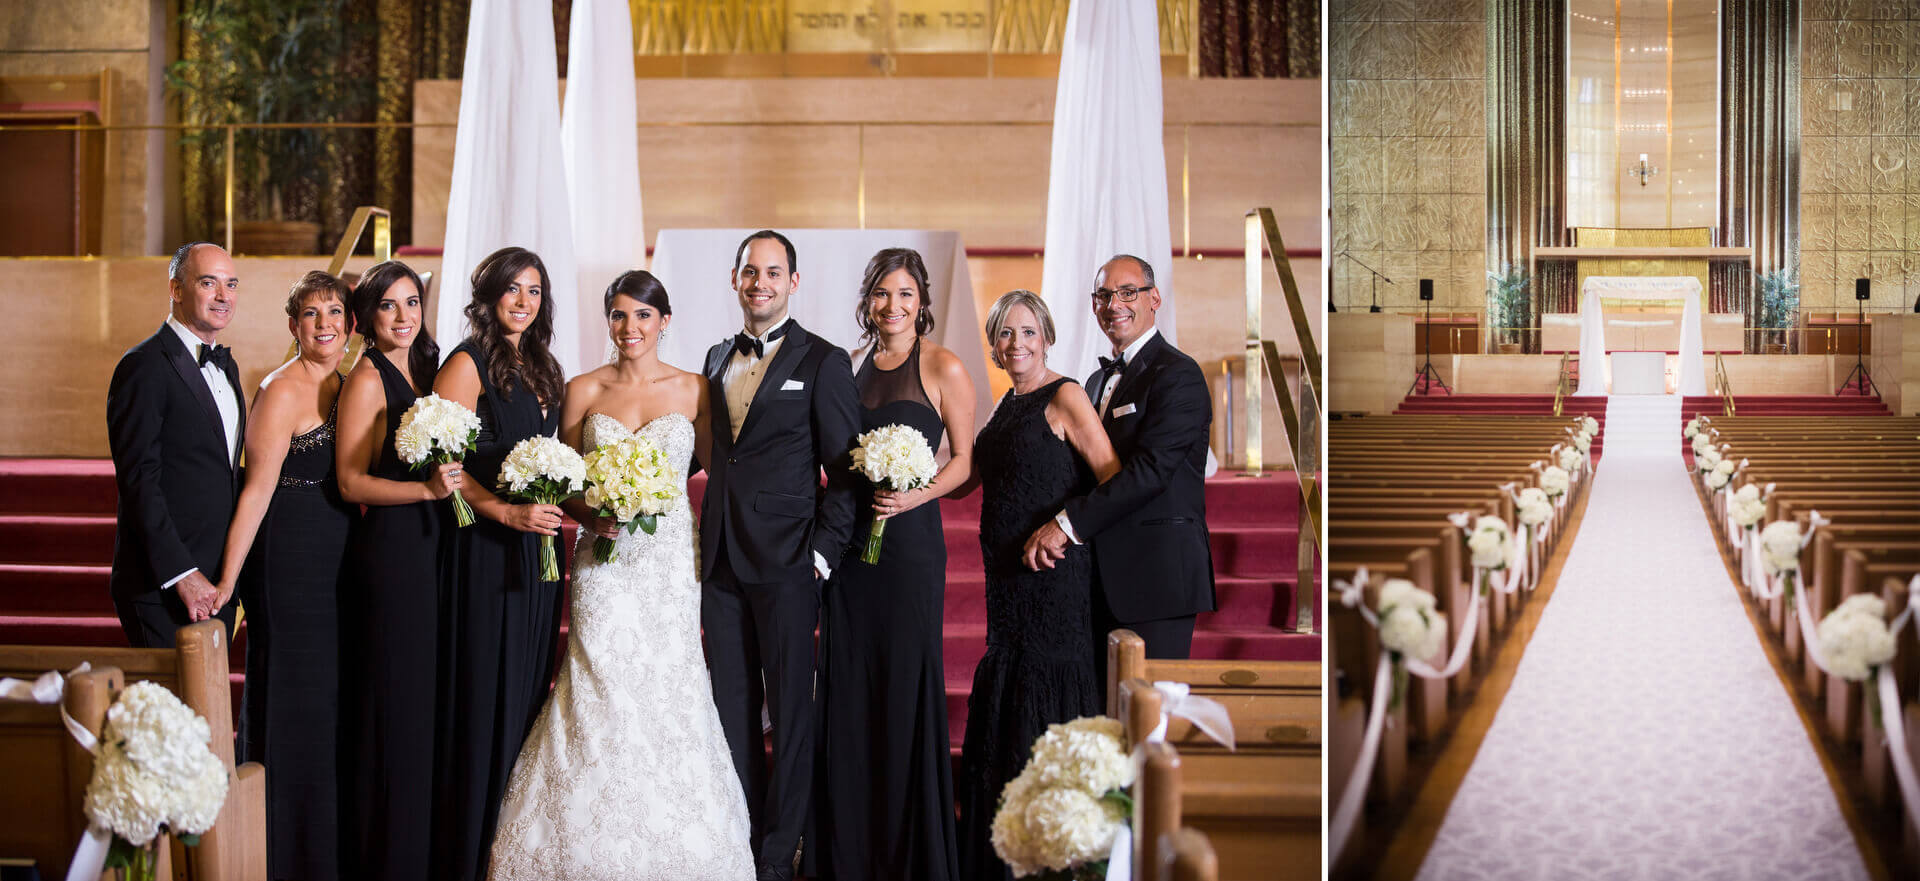 Toronto wedding Photography family photos